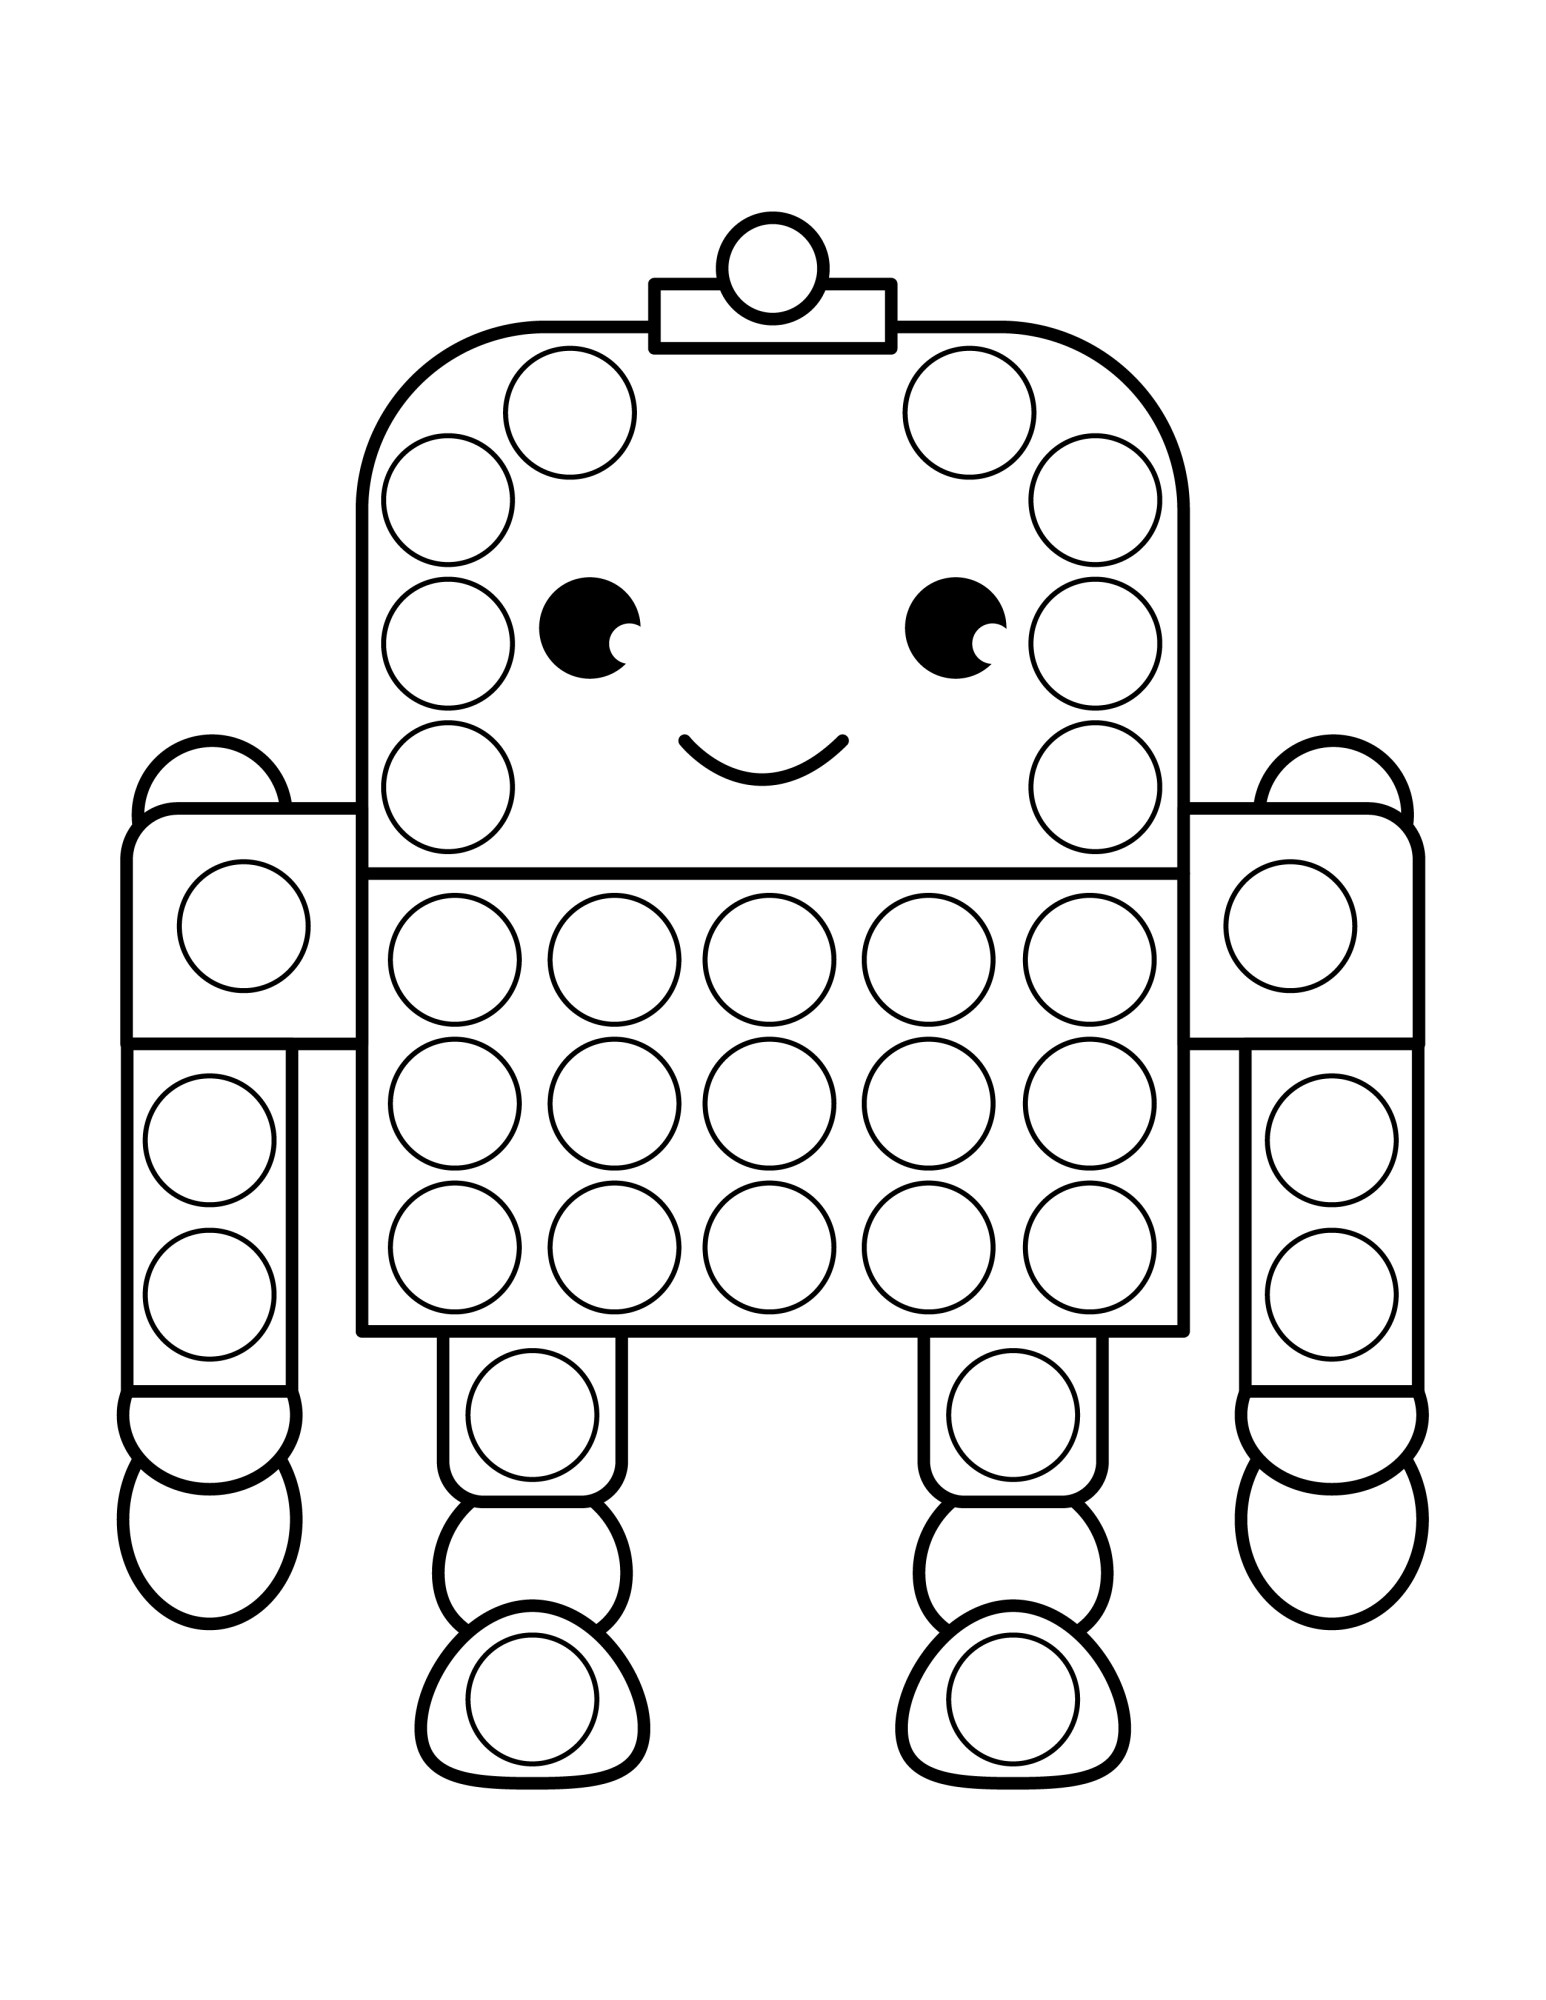 Раскраска для детей: игрушка робот Поп-ит